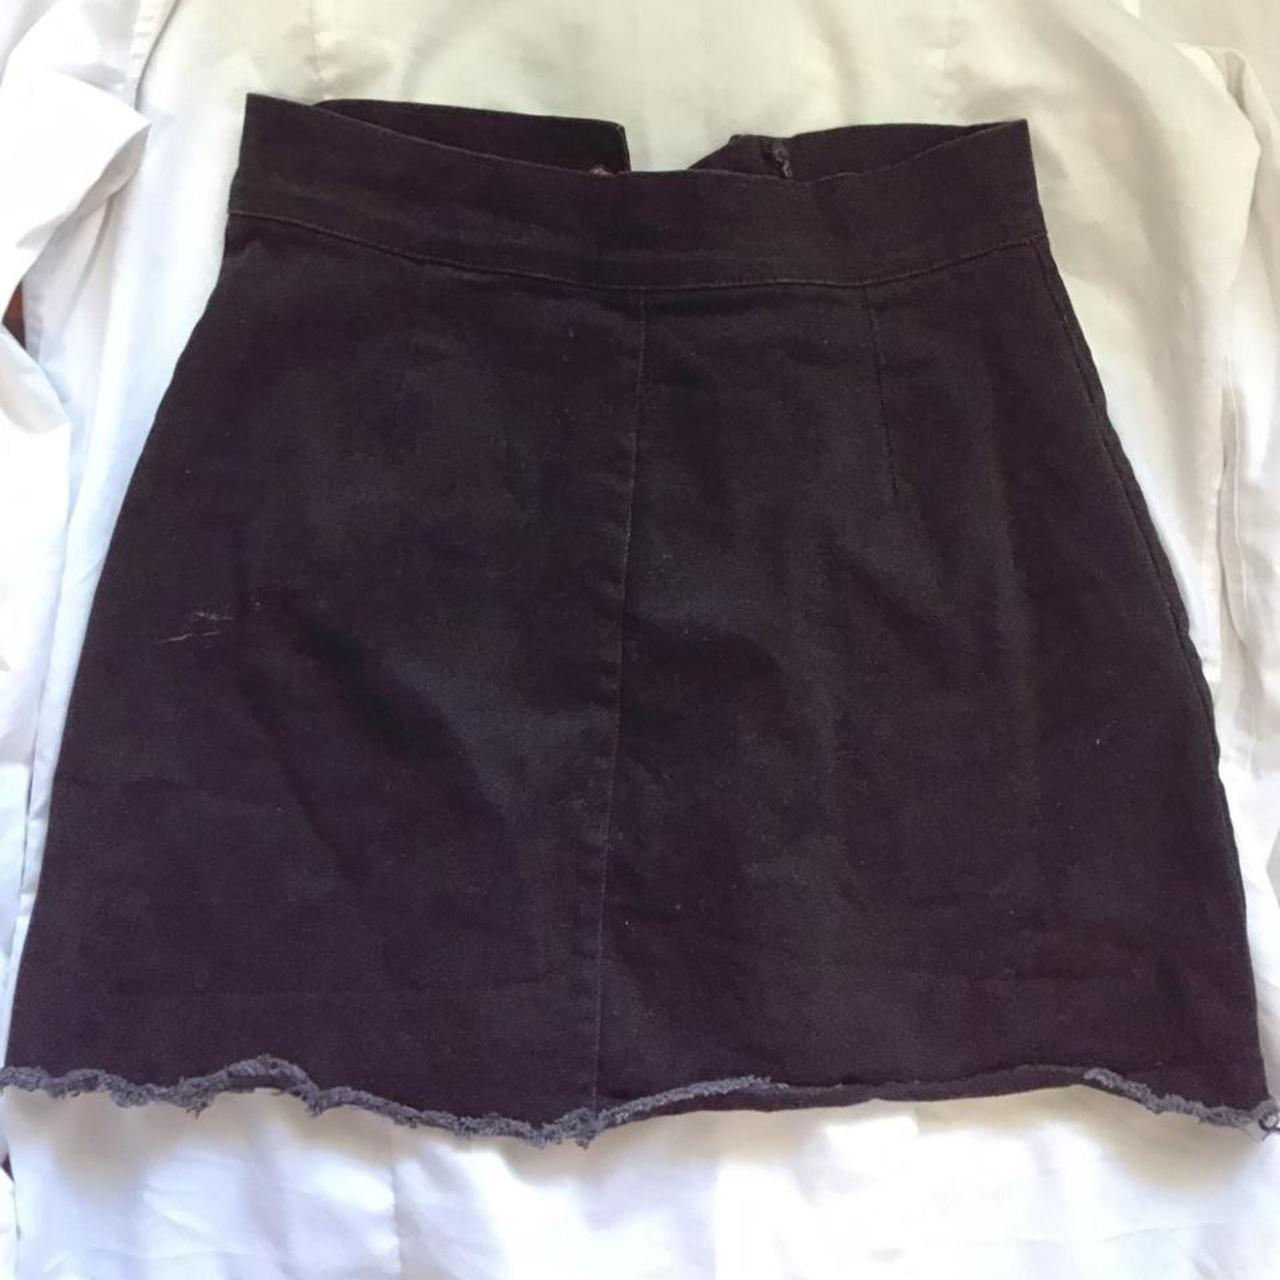 Product Image 2 - Black denim skirt
Size 24” waistband,